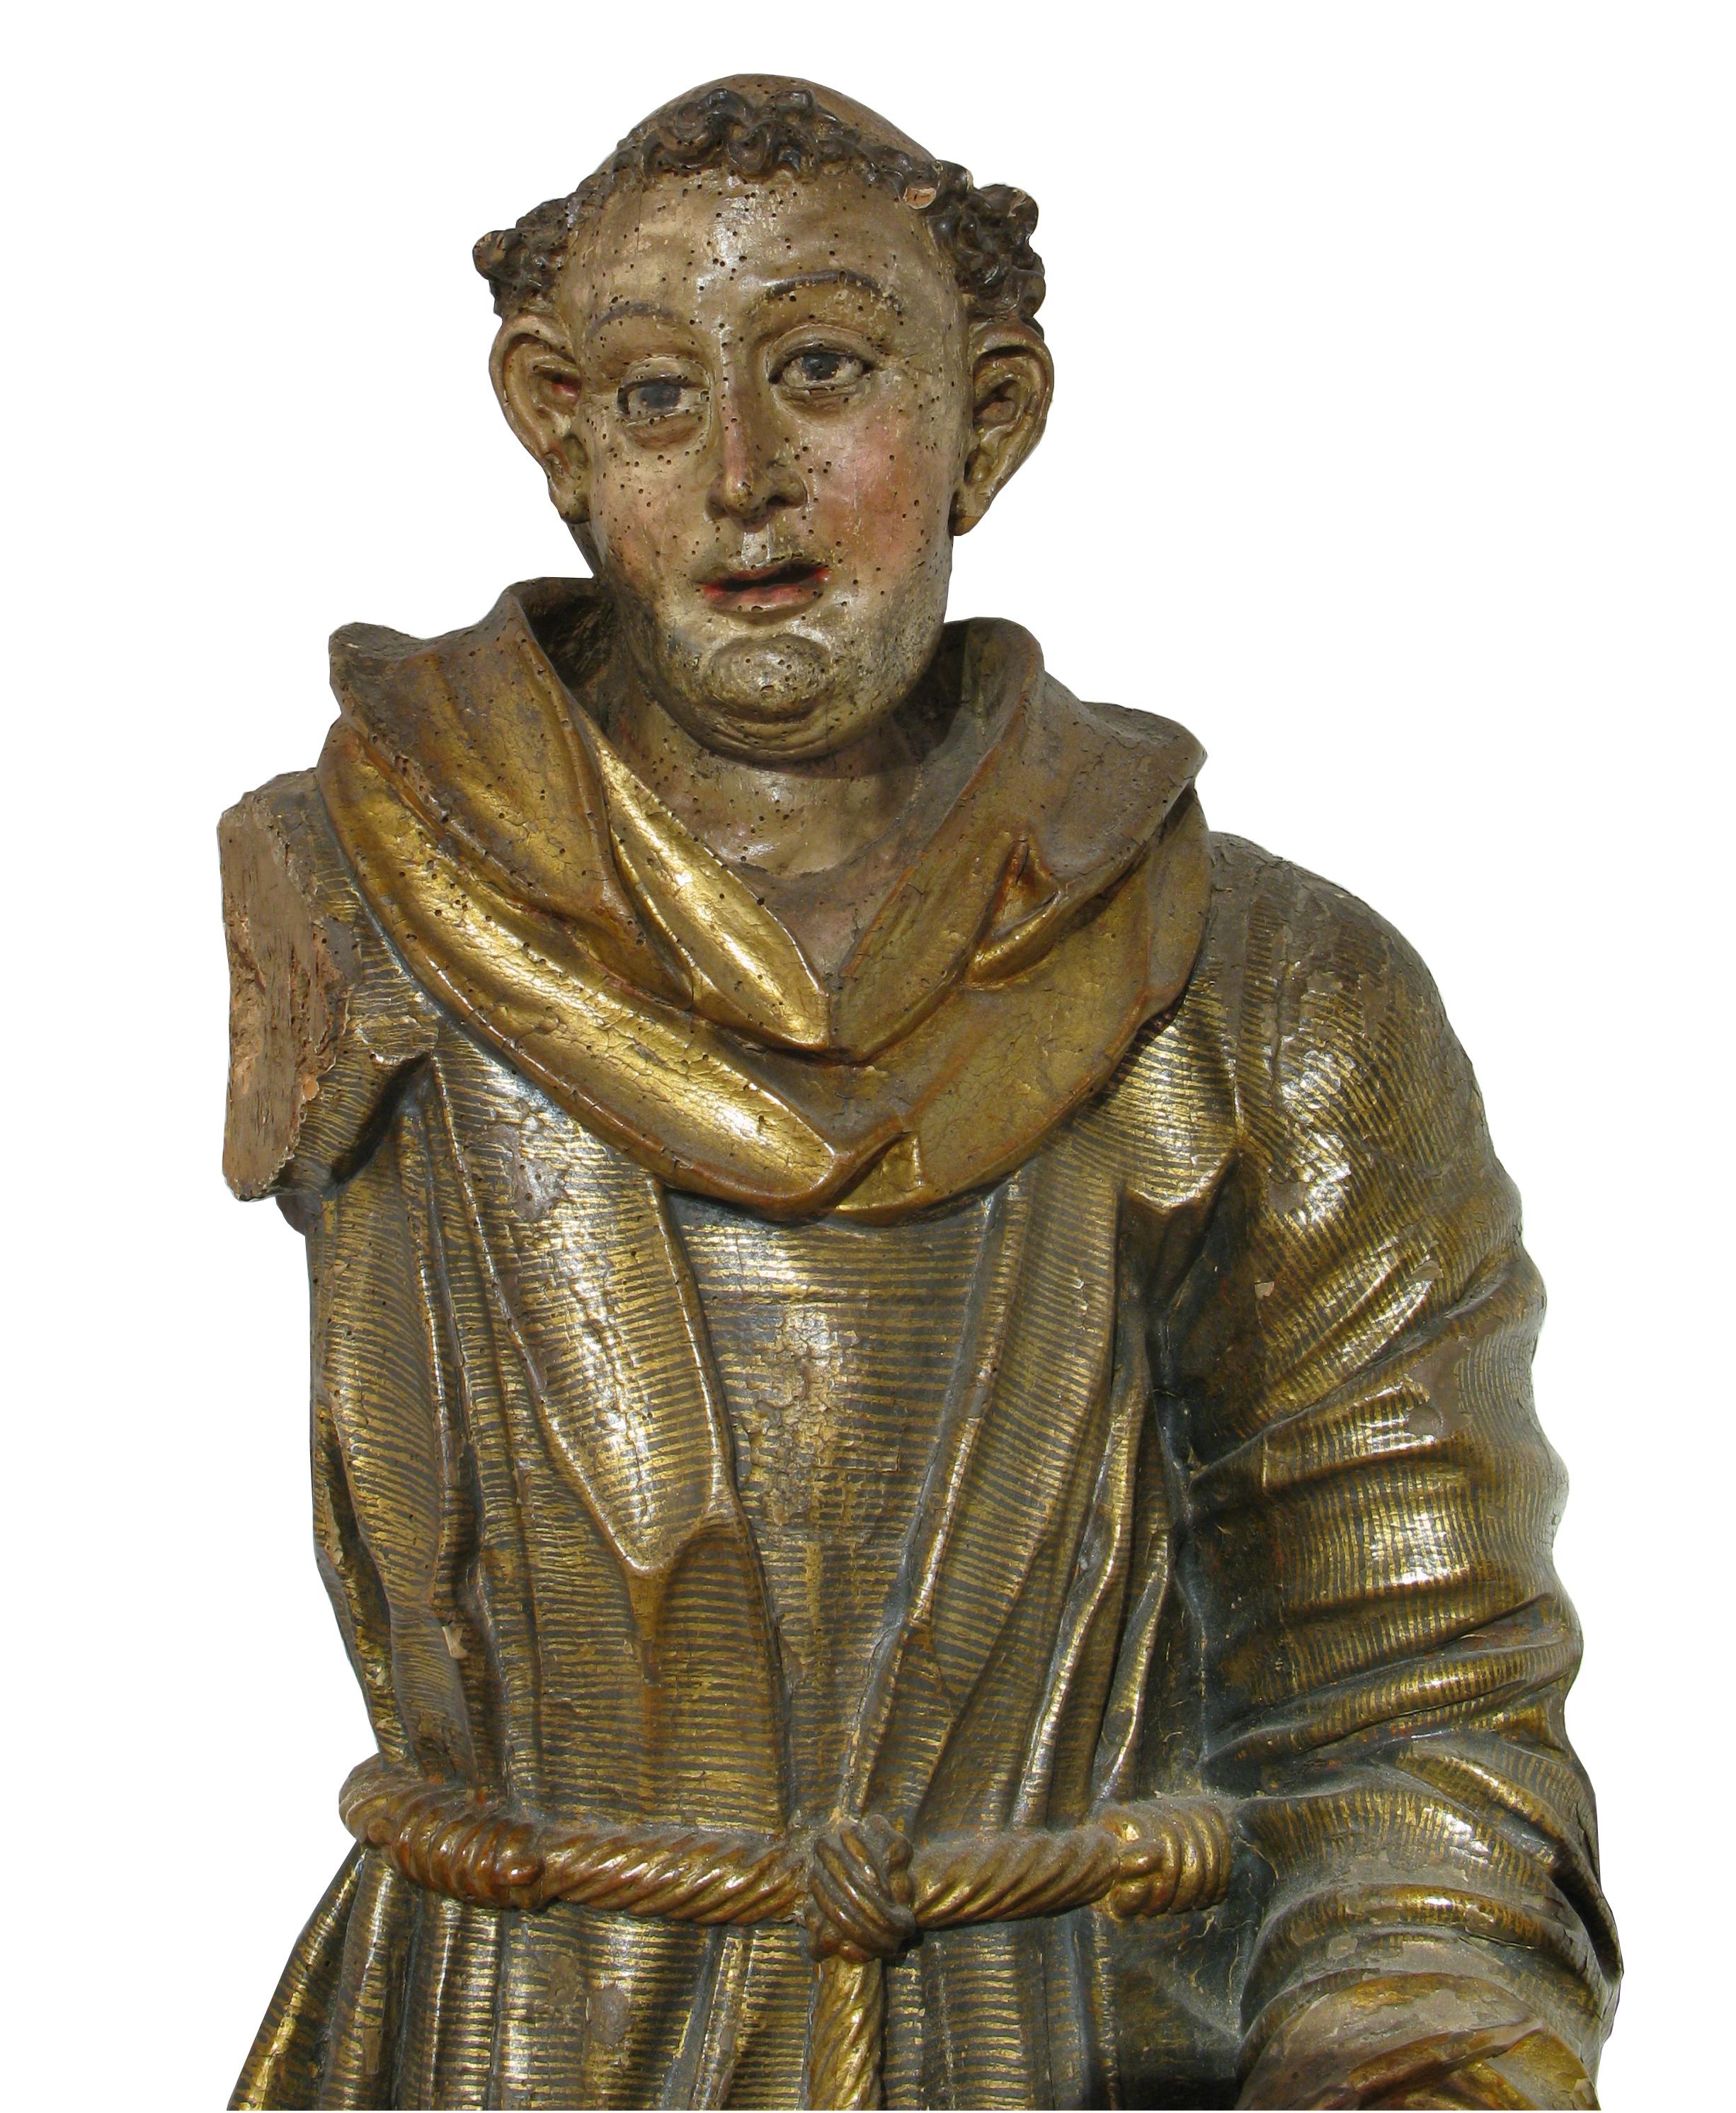 Mönch (hl. Antonius), polychrome und vergoldete Holzskulptur, 16


Heiliger Antonius stehend, gefangen  bei der Verkündigung.

Ein Soutanengewand, das aus einer mit Gold verzierten Tunika besteht, die mit dichten schwarzen parallelen Linien